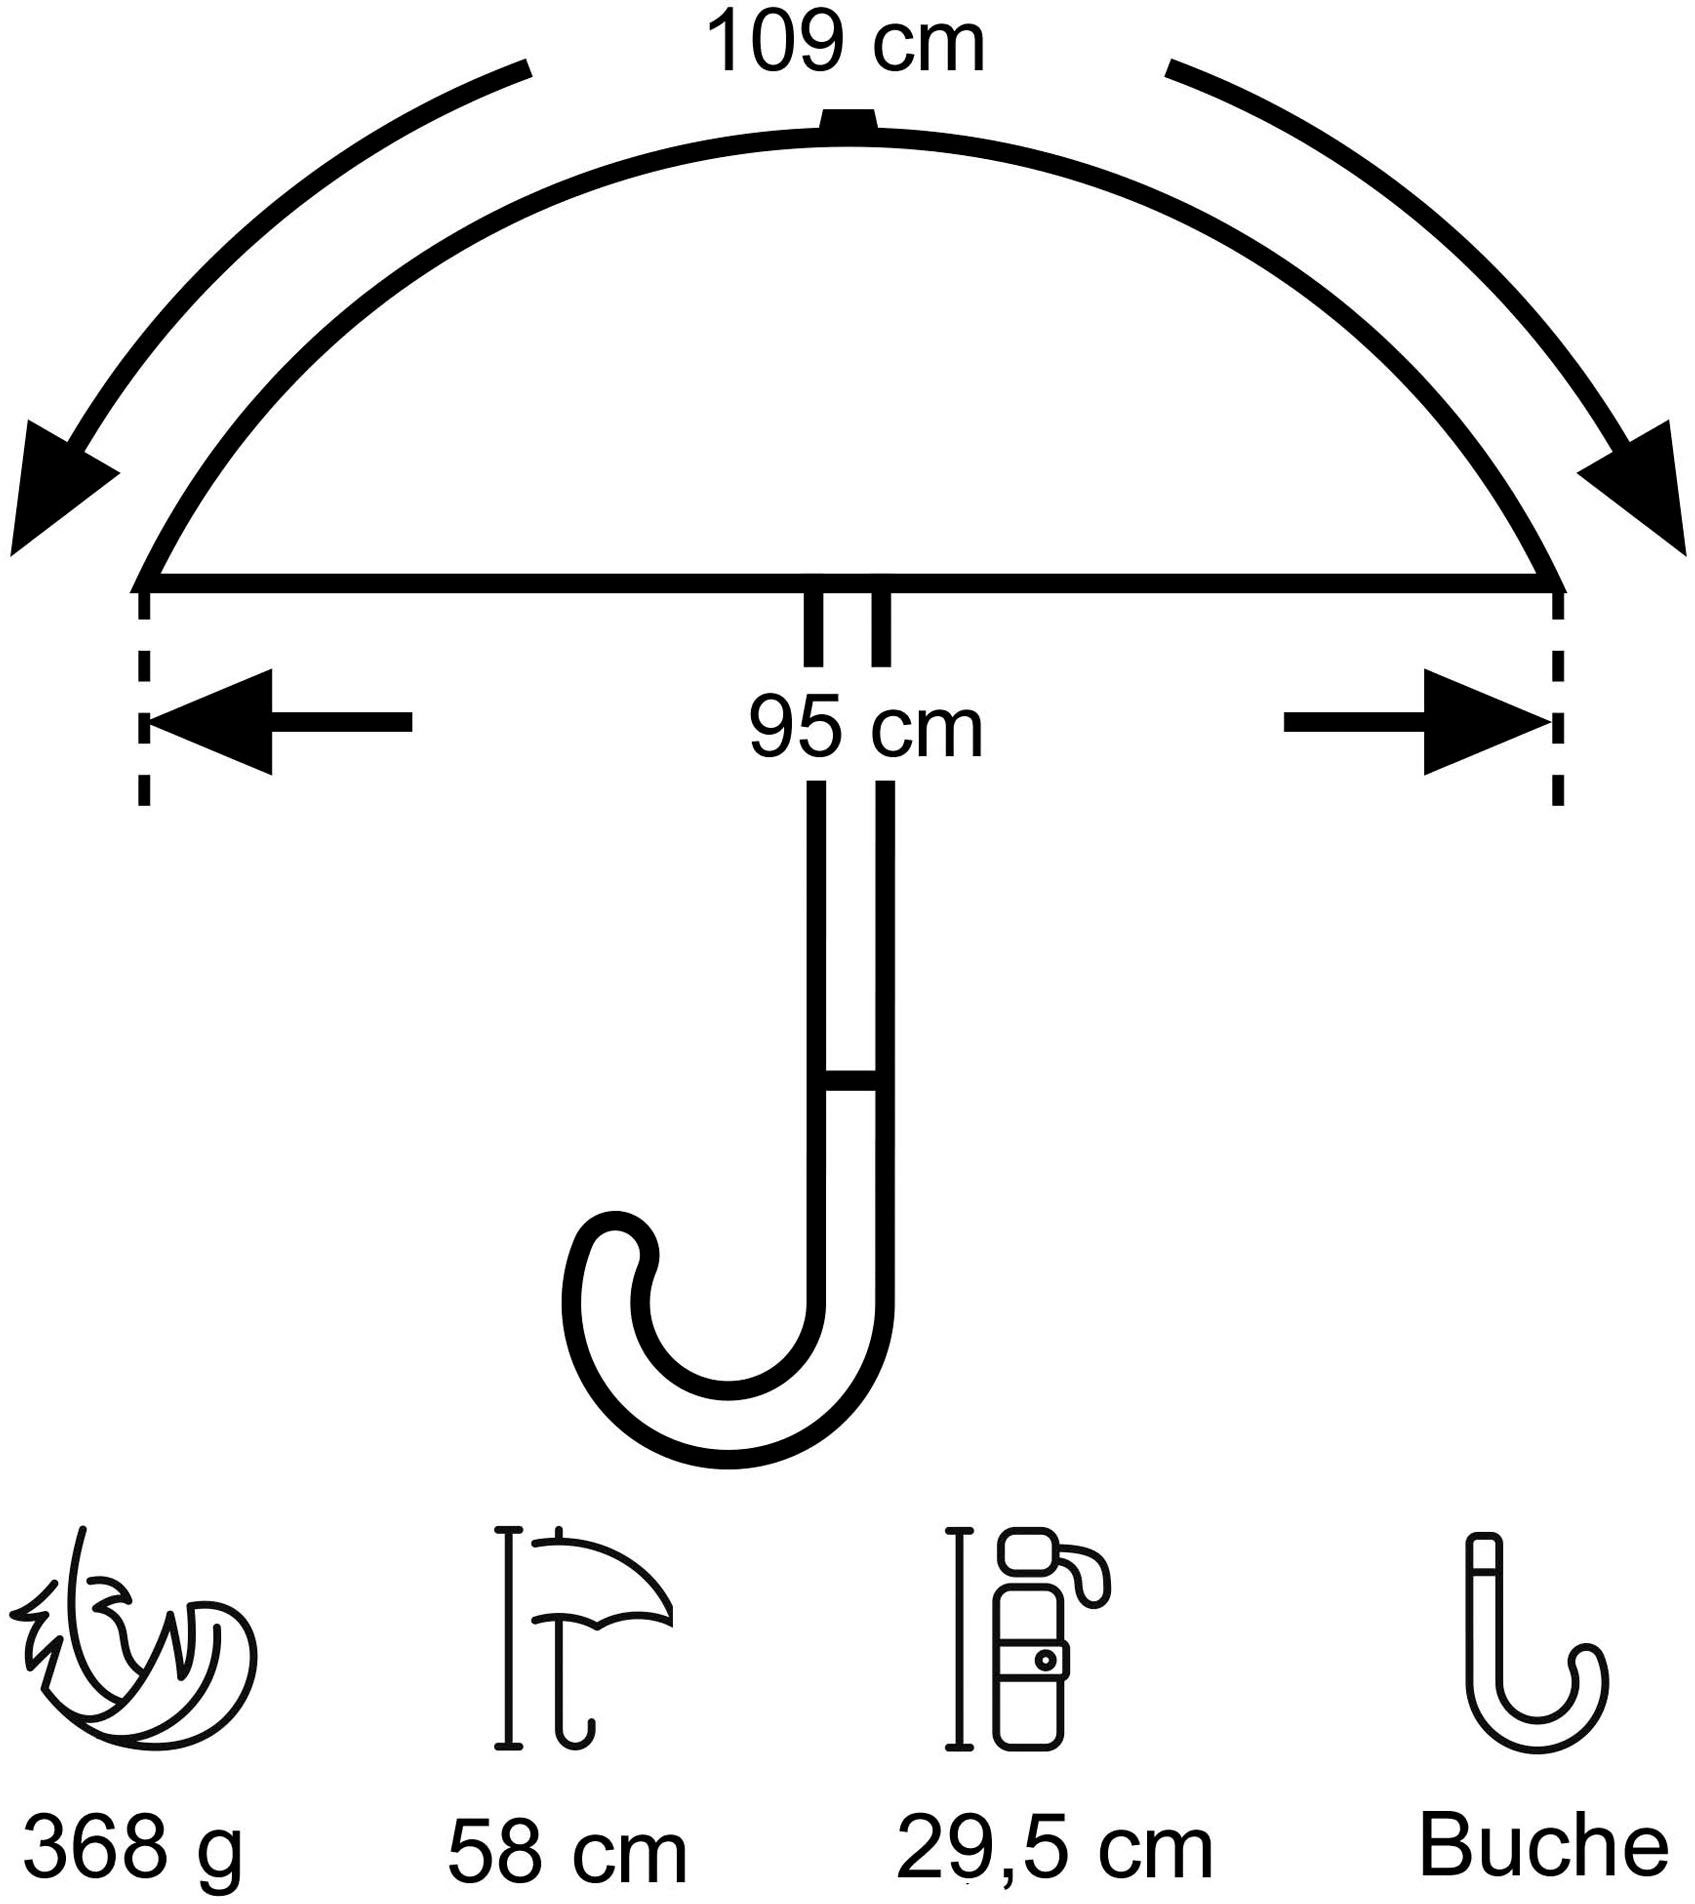 marine, Umwelt-Taschenschirm, grün EuroSCHIRM® Kreise Taschenregenschirm